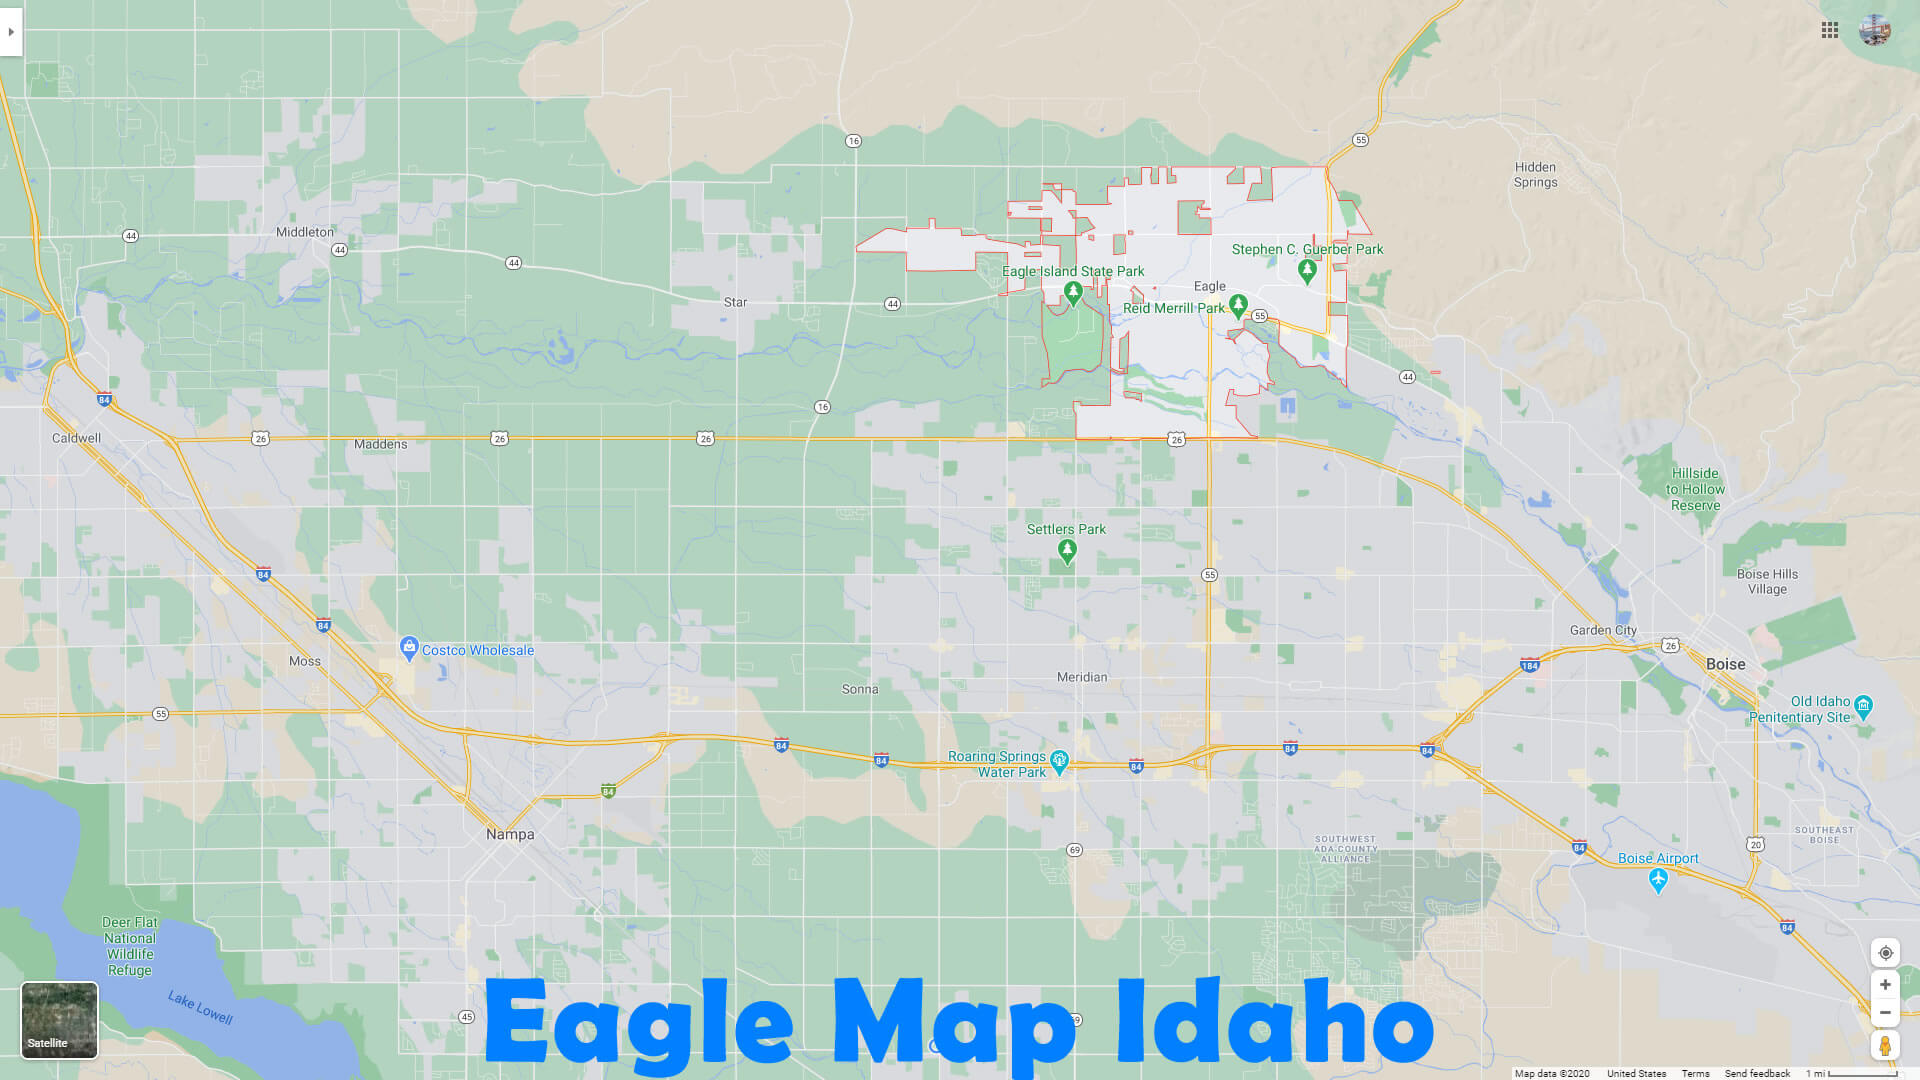 Eagle Map Idaho